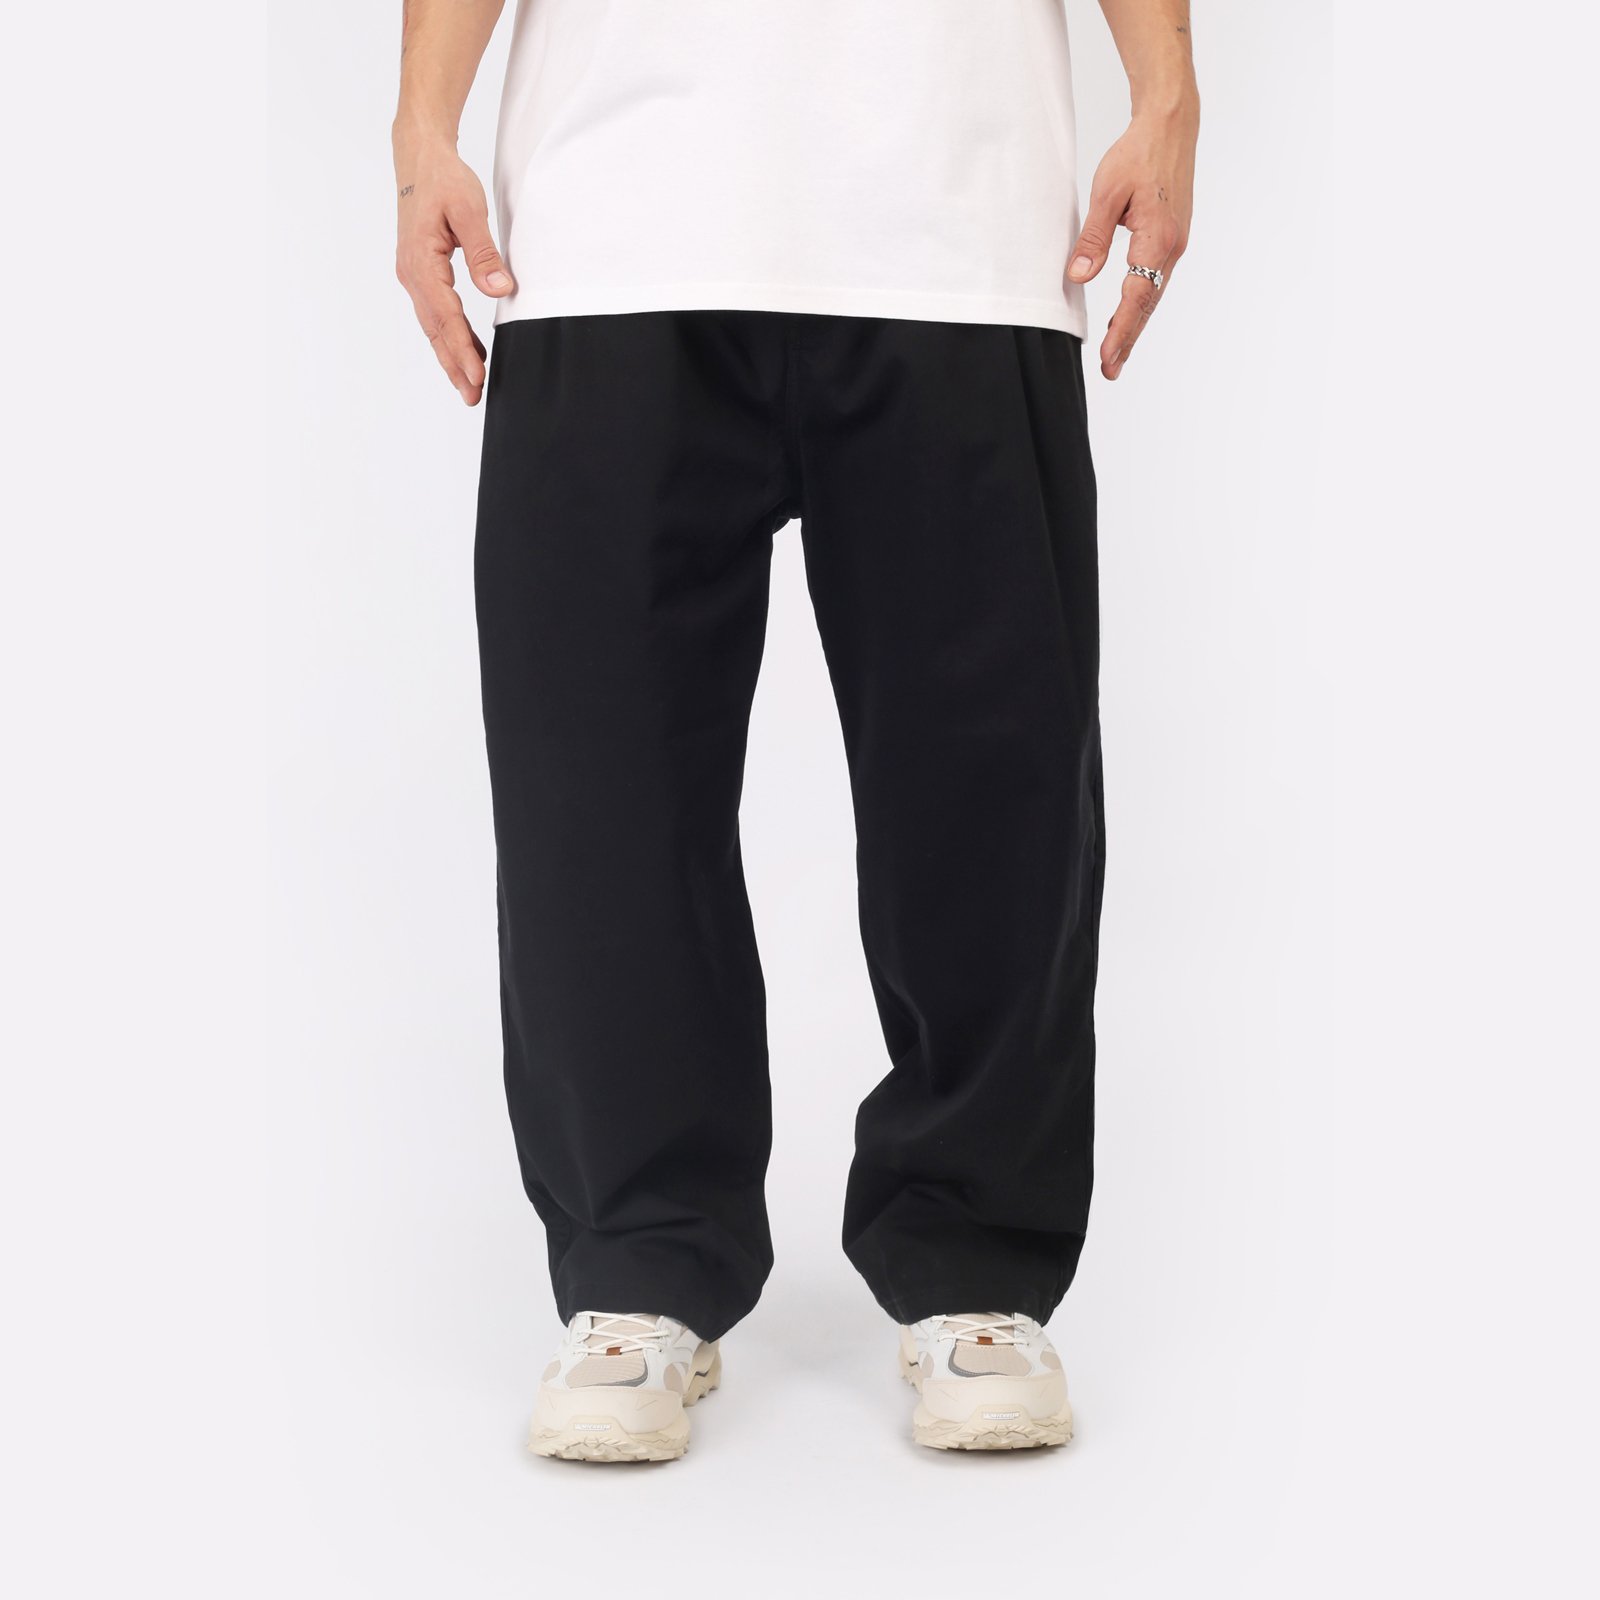 мужские брюки Carhartt WIP Marv Pant  (I033129-black)  - цена, описание, фото 1